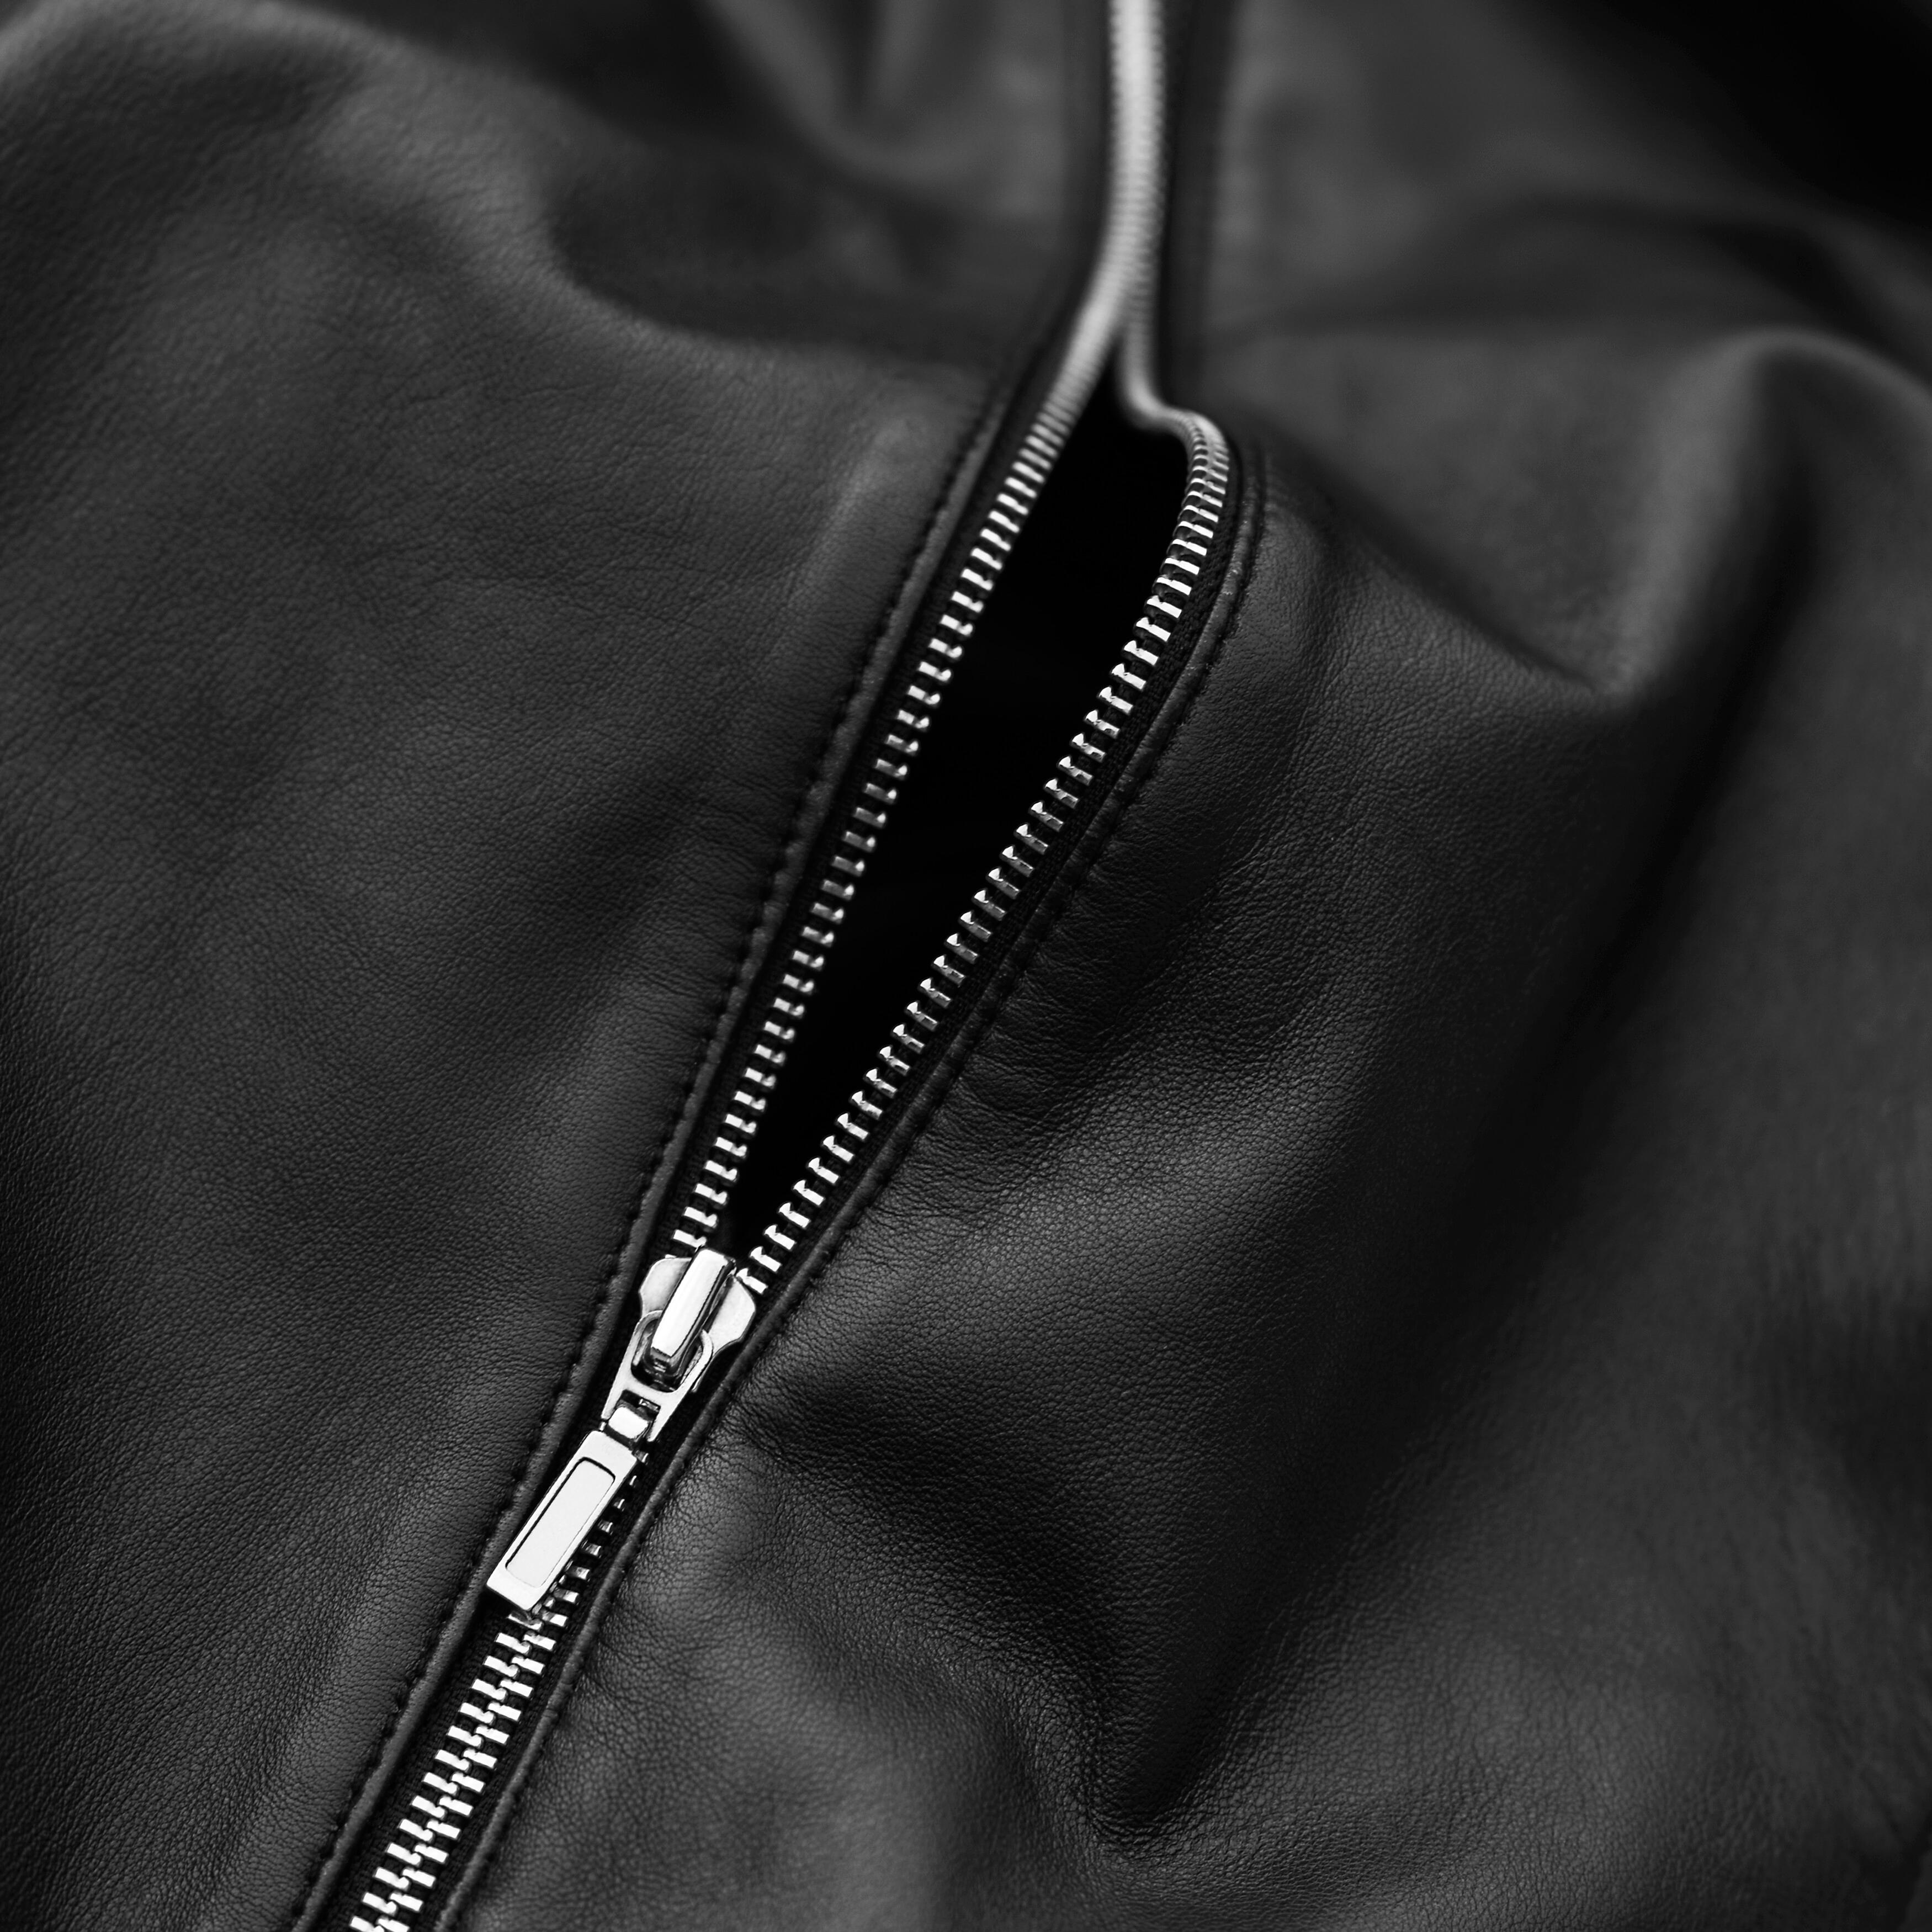 A zip in a black jacket.